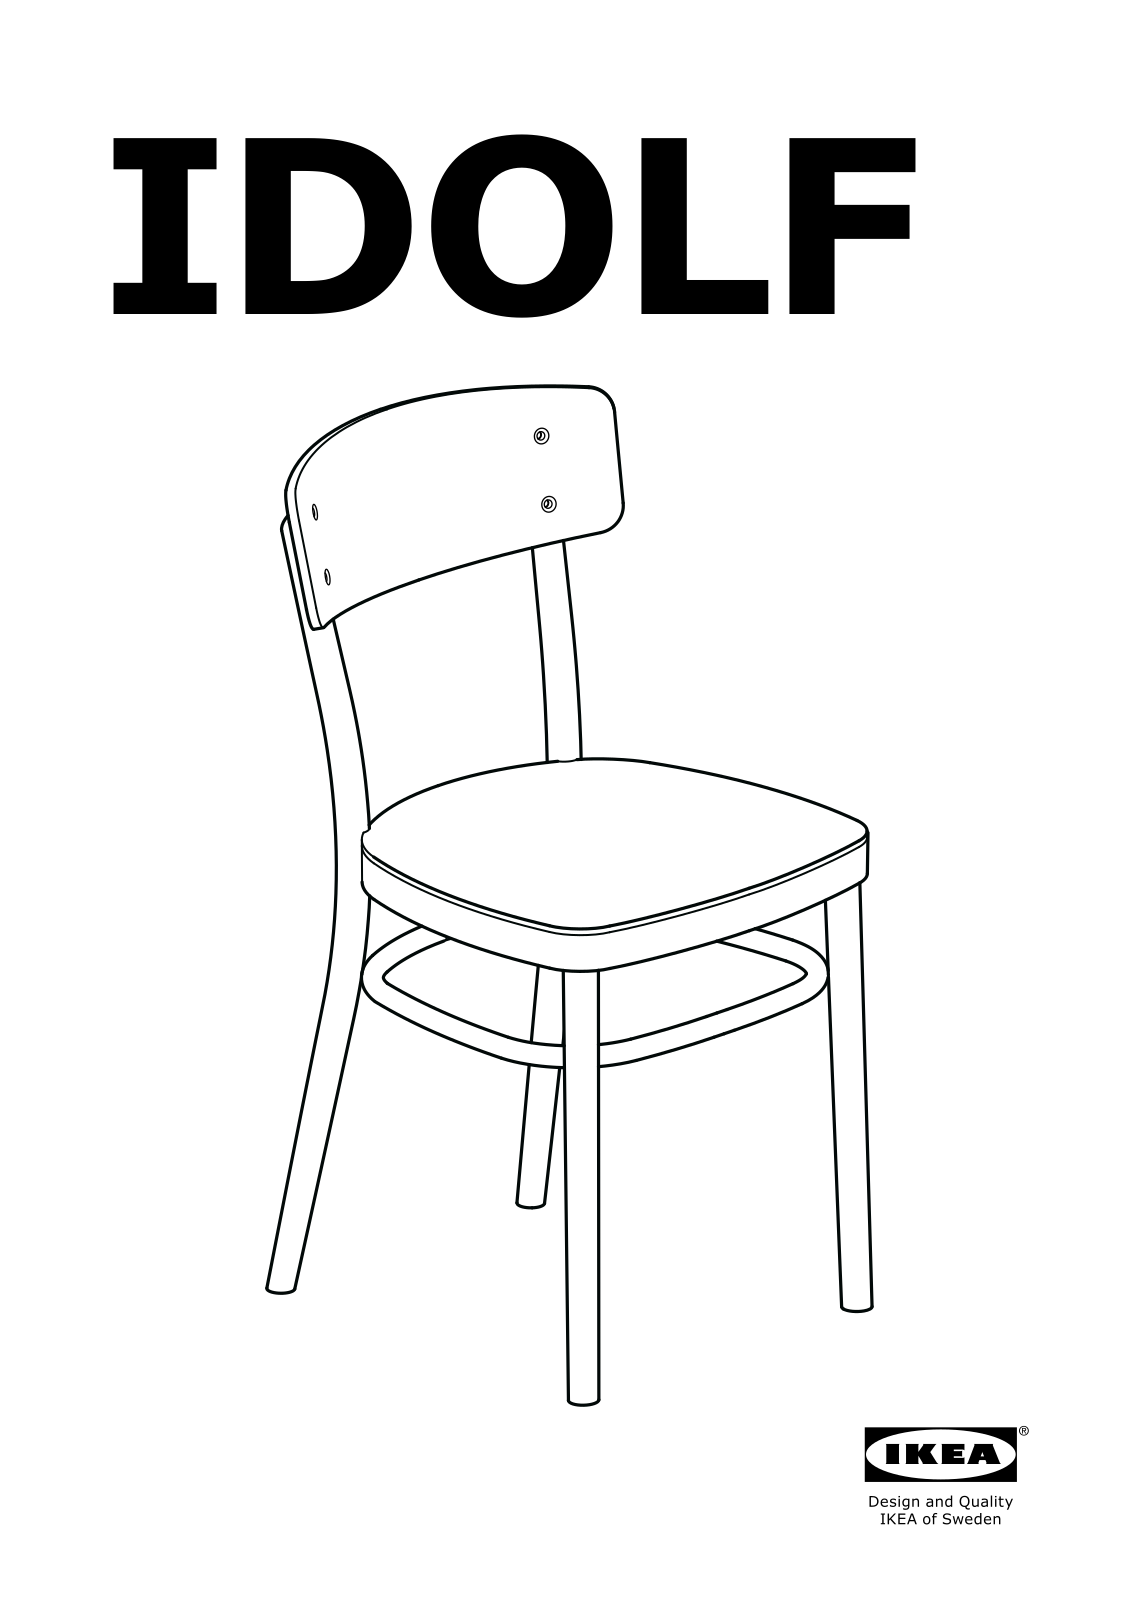 IKEA IDOLF User Manual